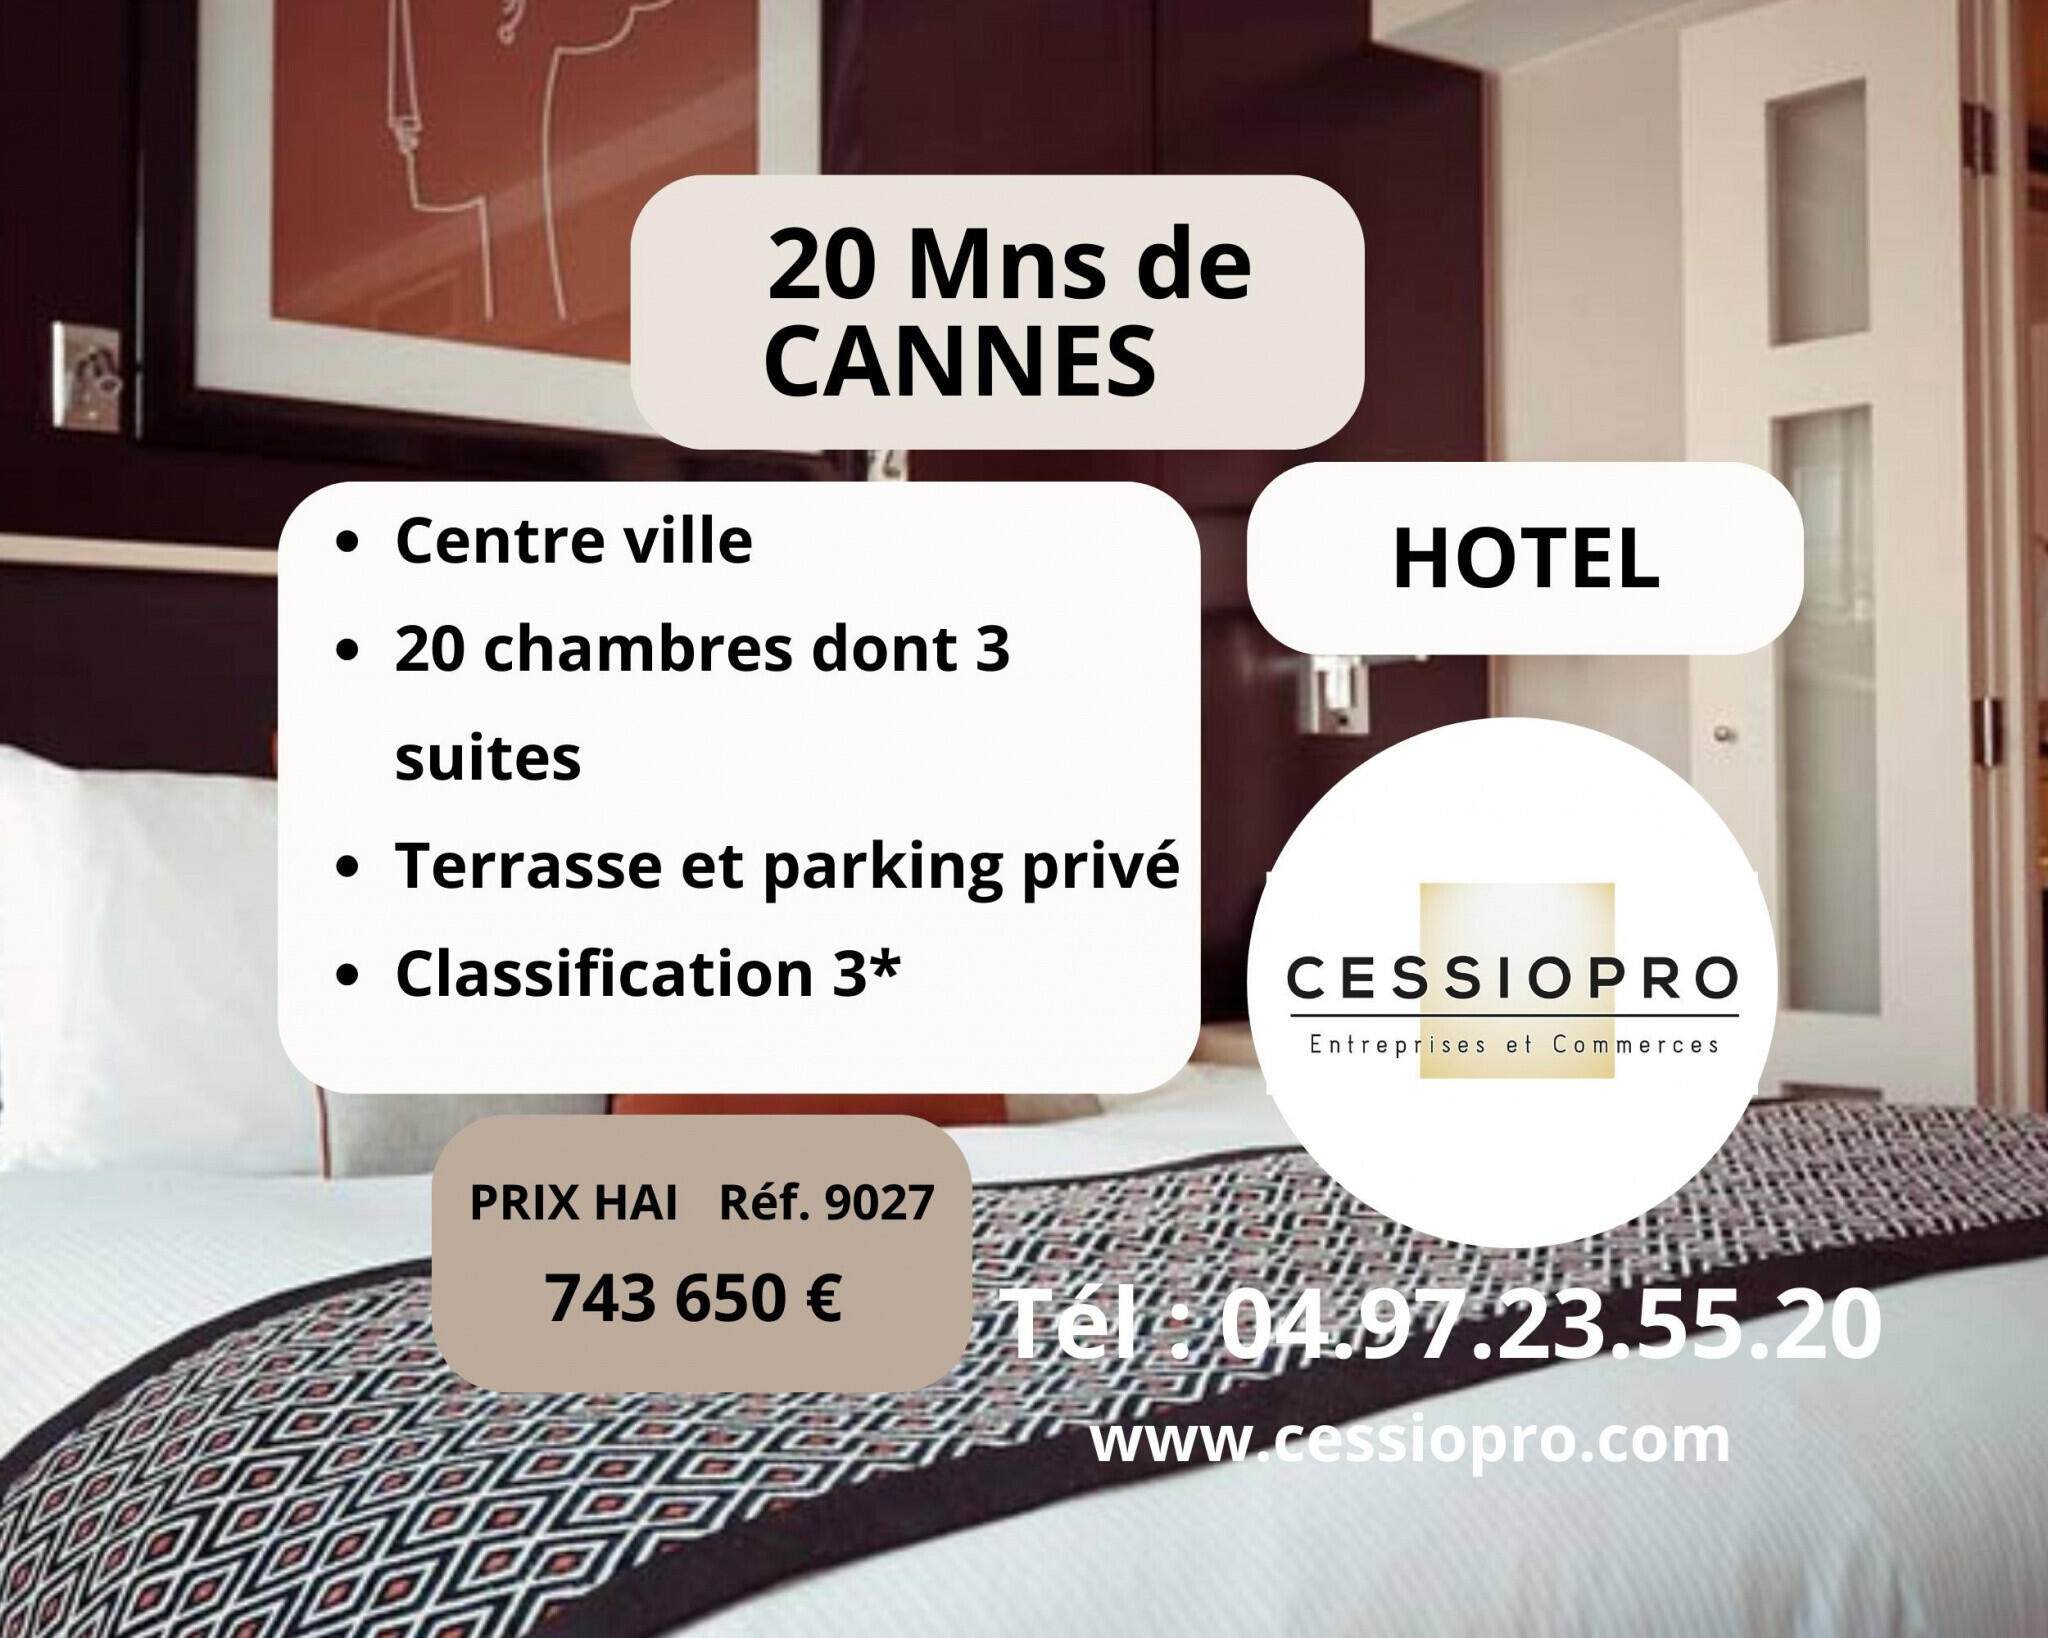 Vend hôtel vingtaine de chambre 20mns de Cannes